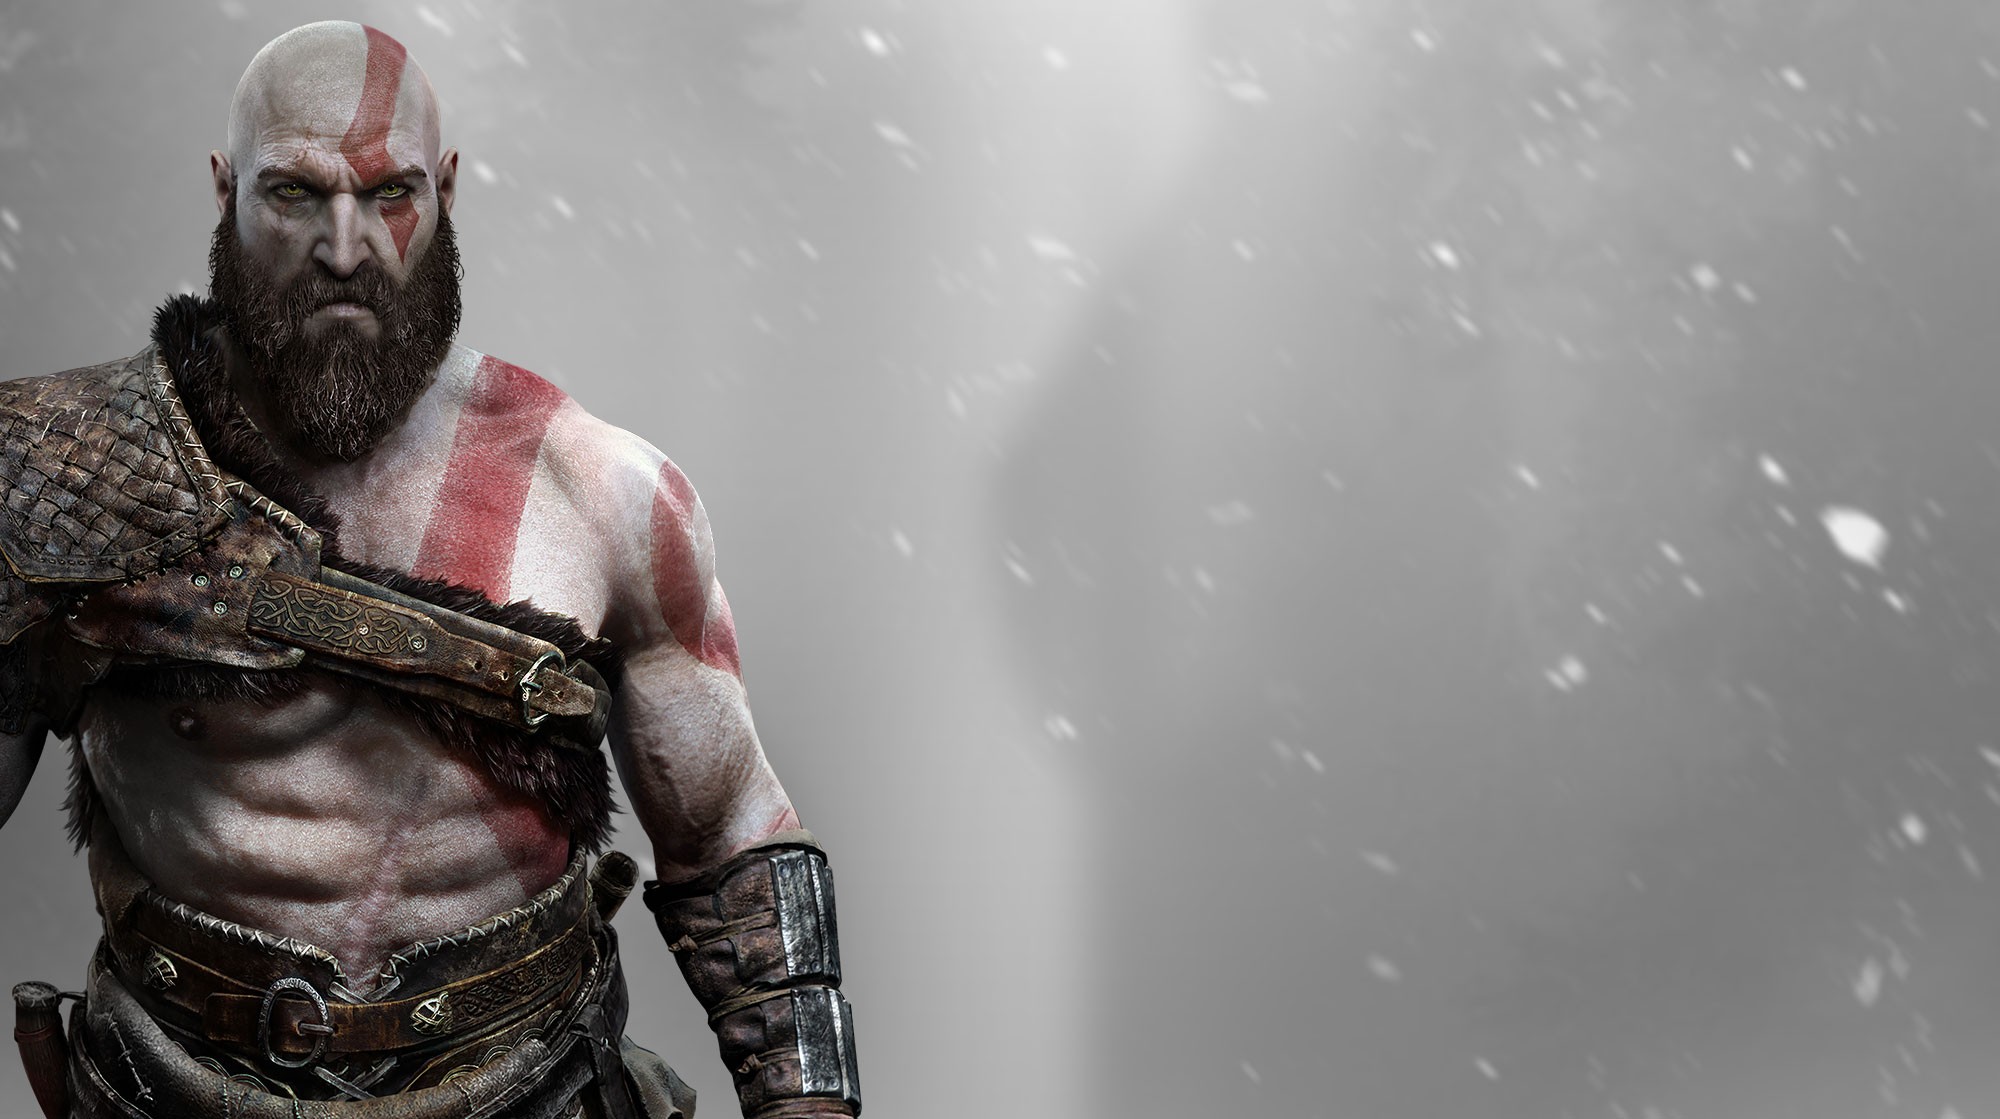 General 2000x1119 God God of War Kratos Omega valhalla god of war 4 God of War (2018) video games video game characters men beard inked men video game men antiheroes bald